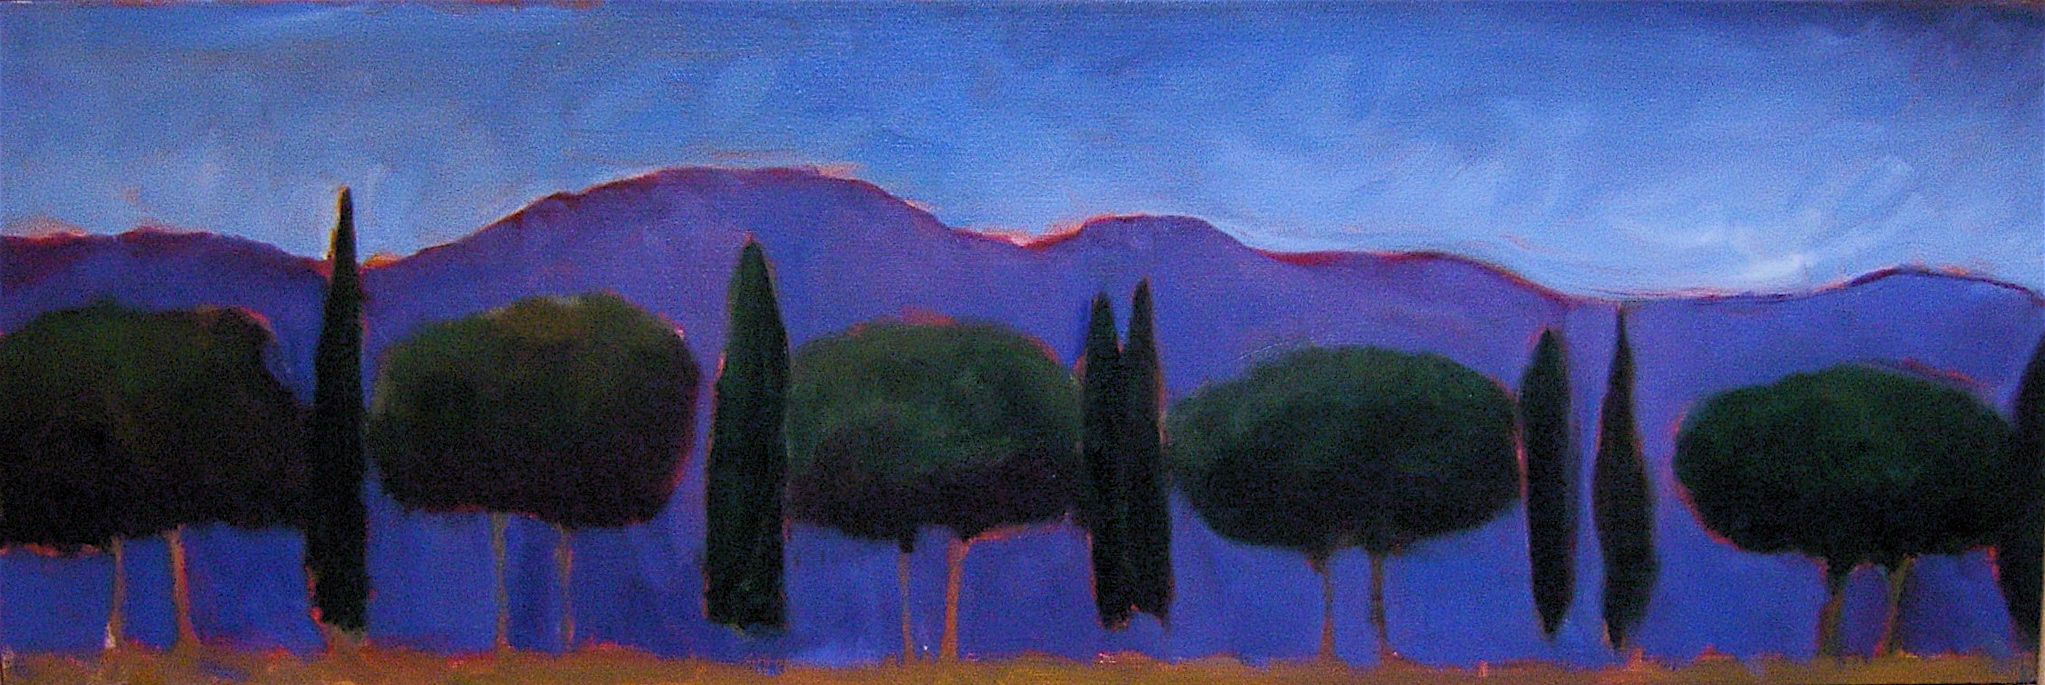 Tuscan Trees, Dusk